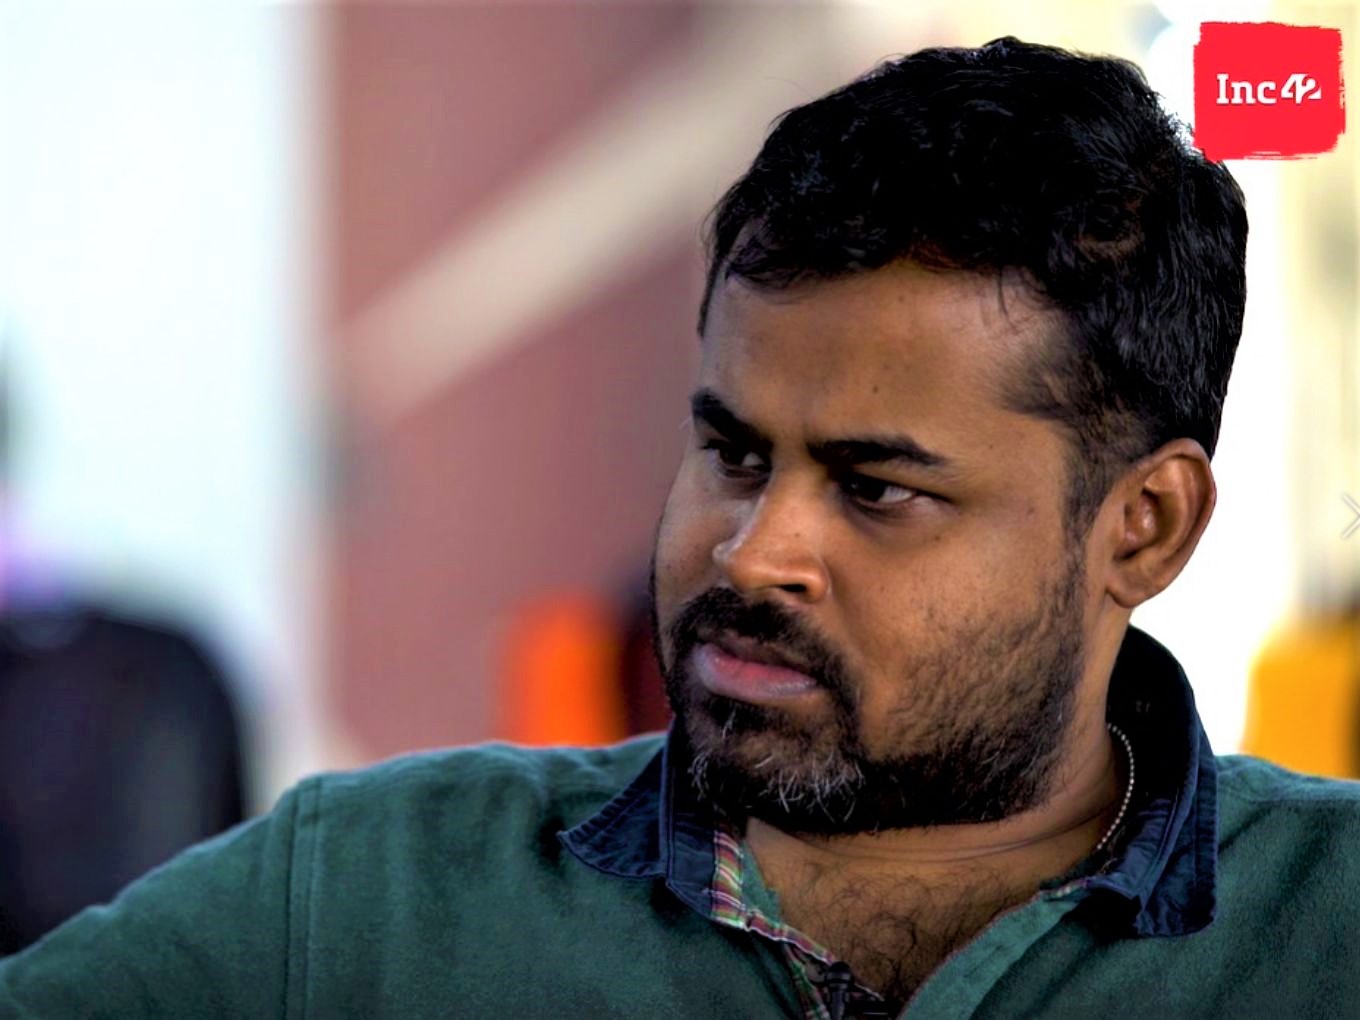 NinjaCart founder Thirukumaran explains the workings of the startup